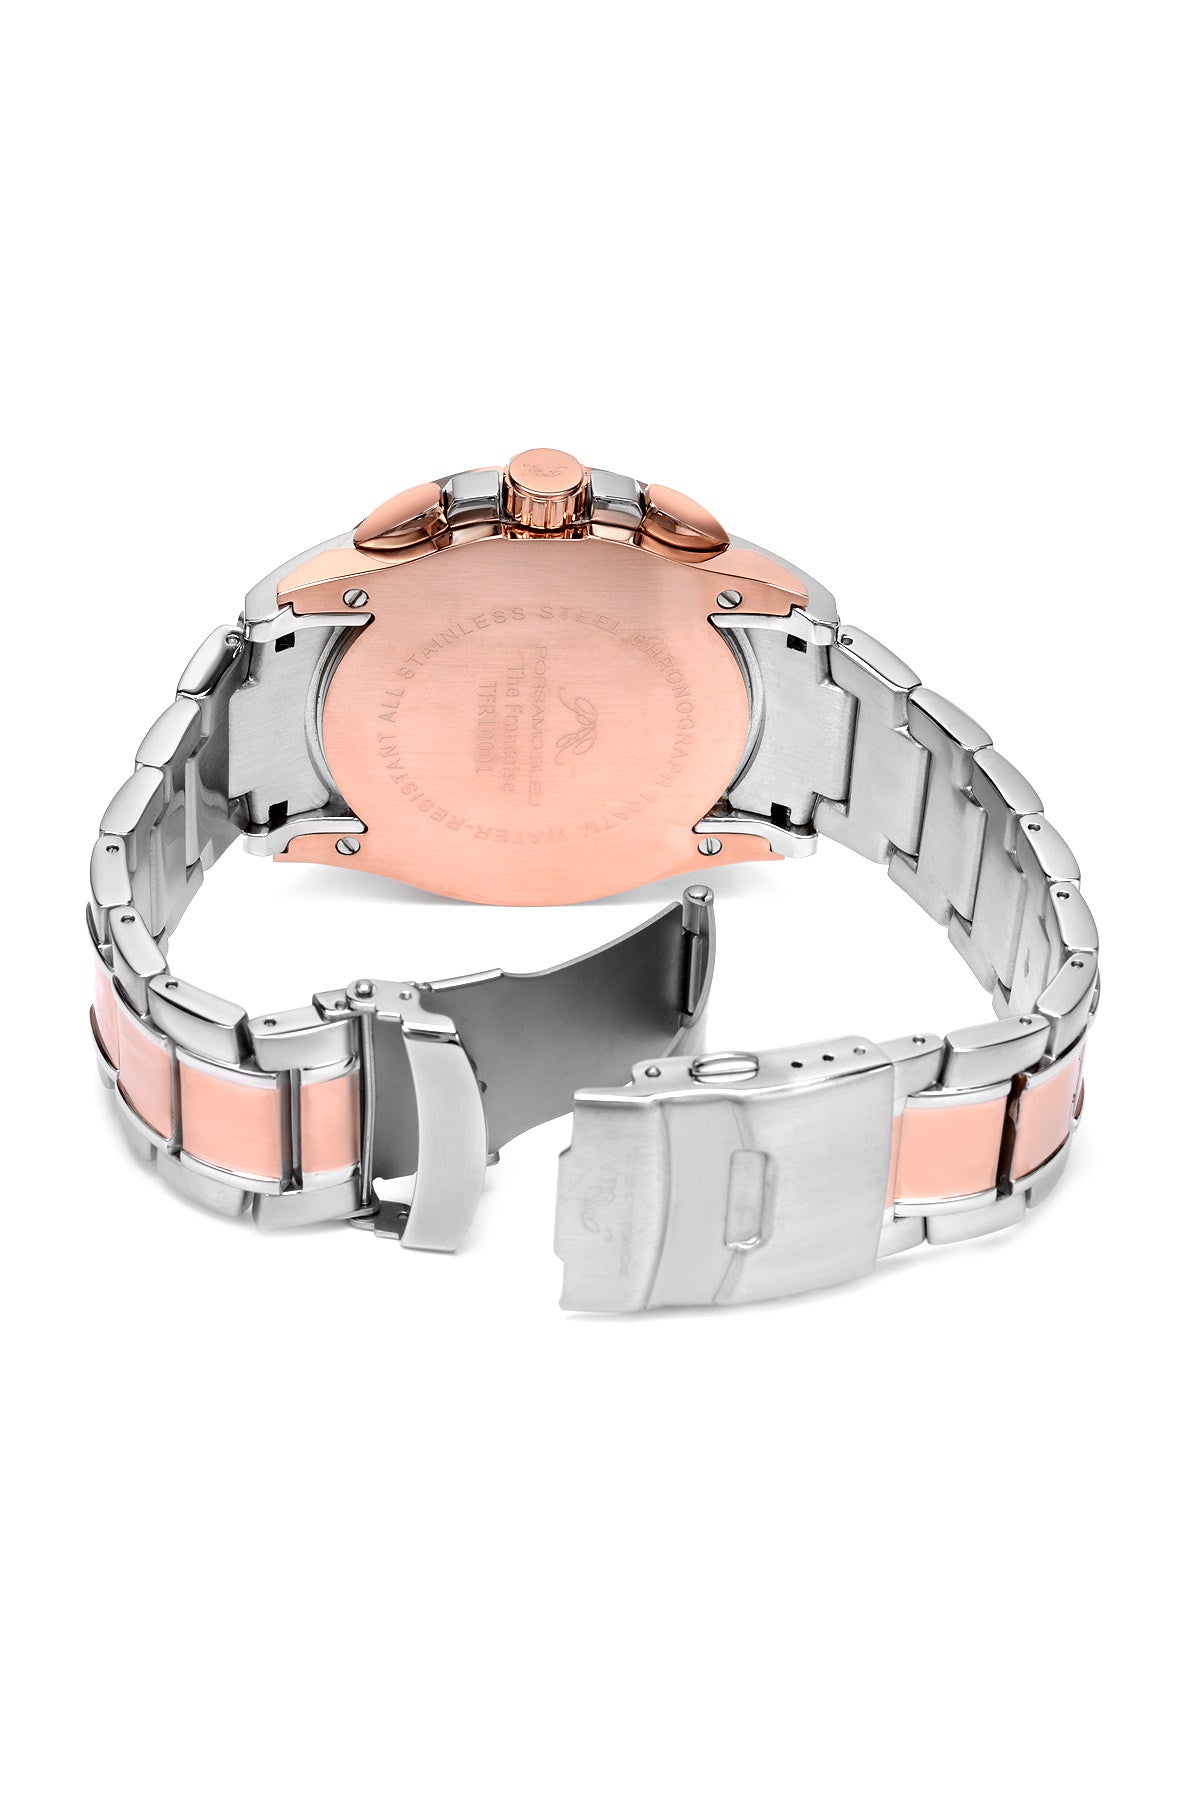 Porsamo Bleu Francoise luxury chronograph men's stainless steel watch, silver, rose, black 241AFRS